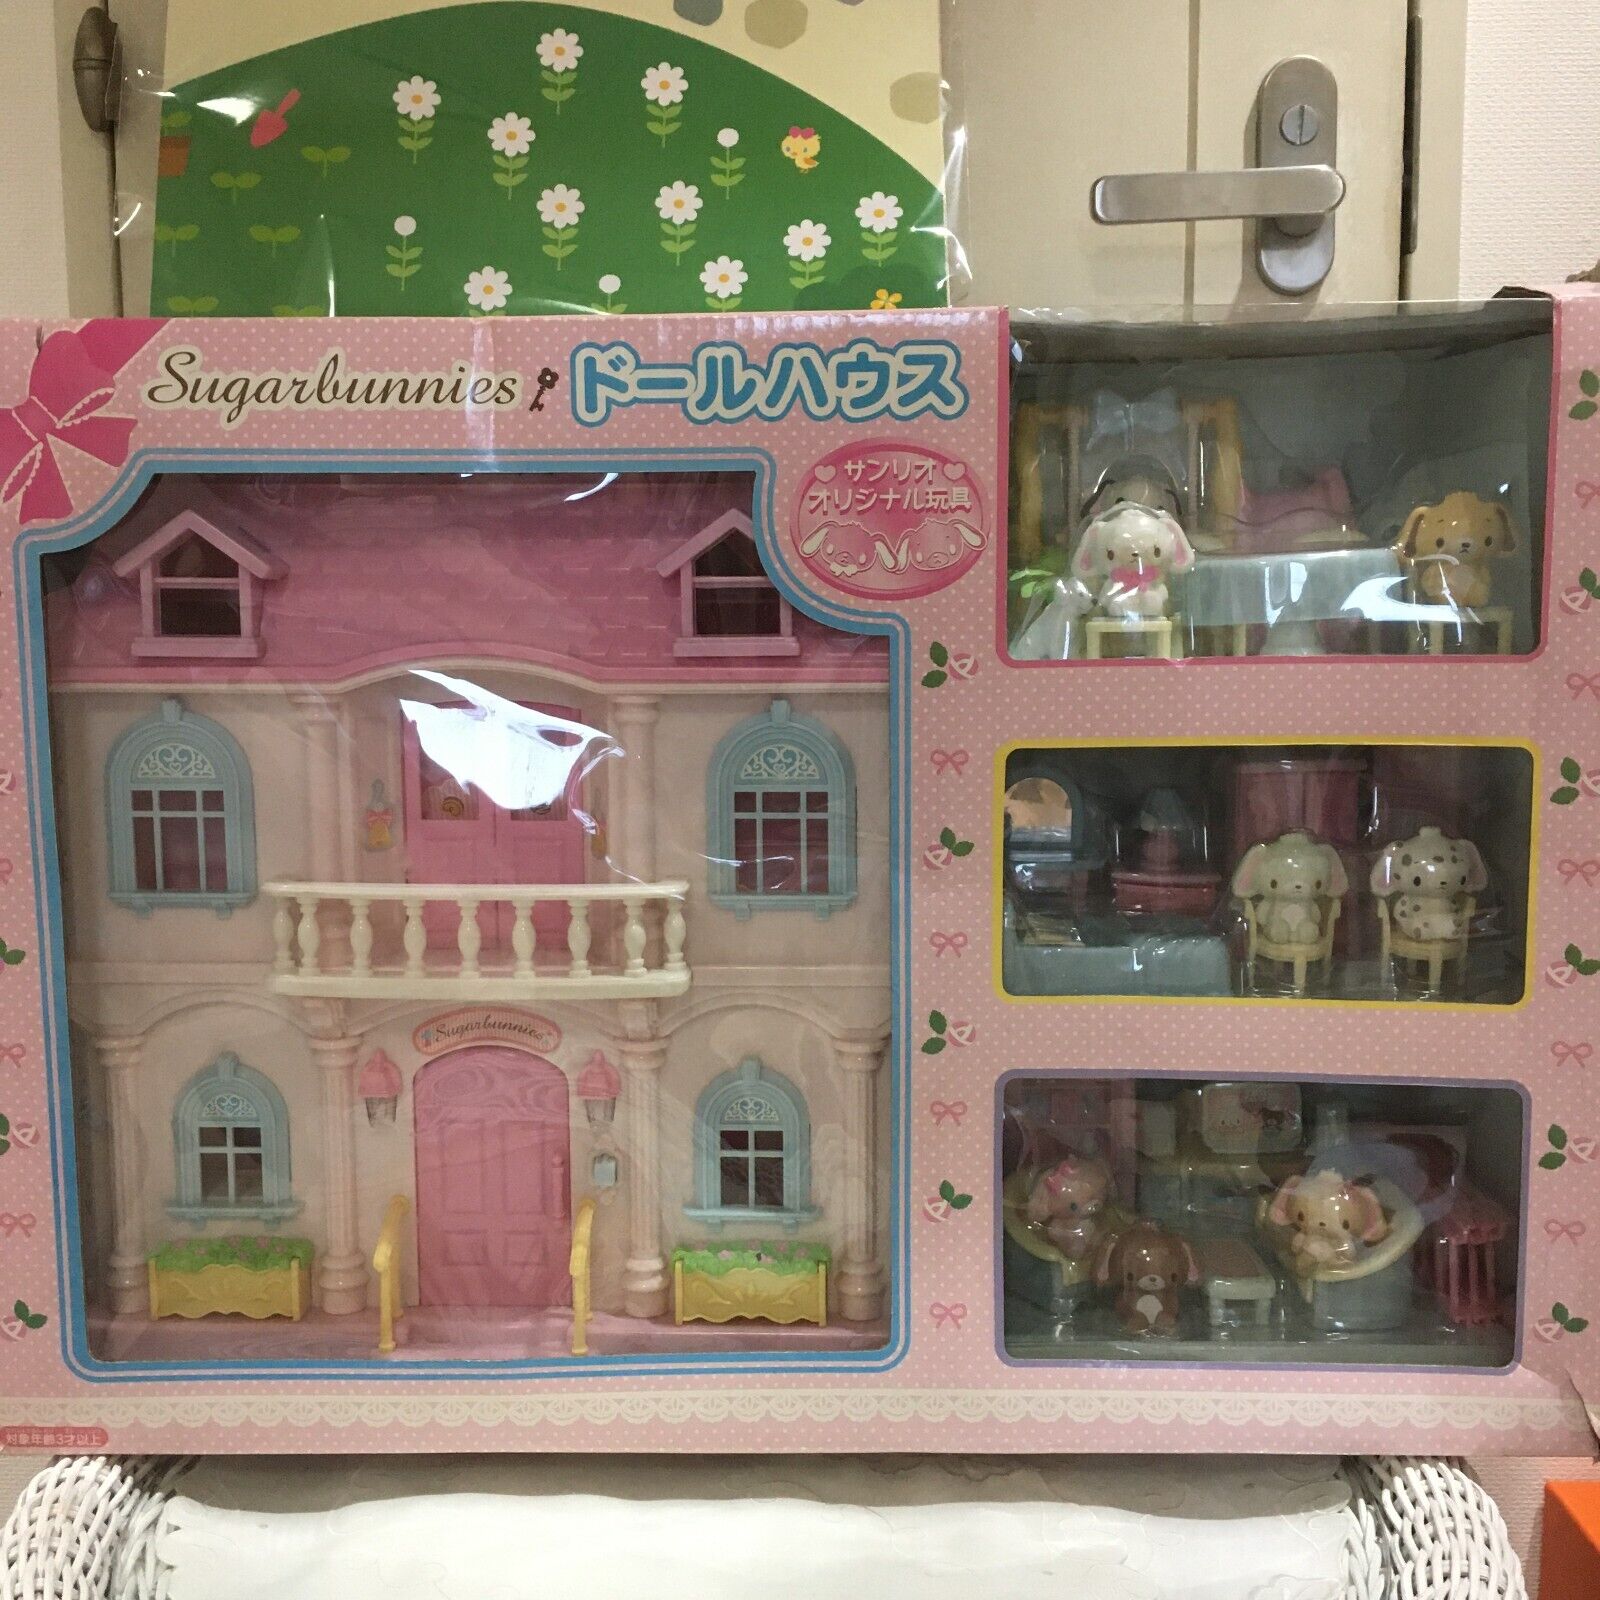 Sanrio Sugarbunnies  Dollhouse pink door  2 sheets with box